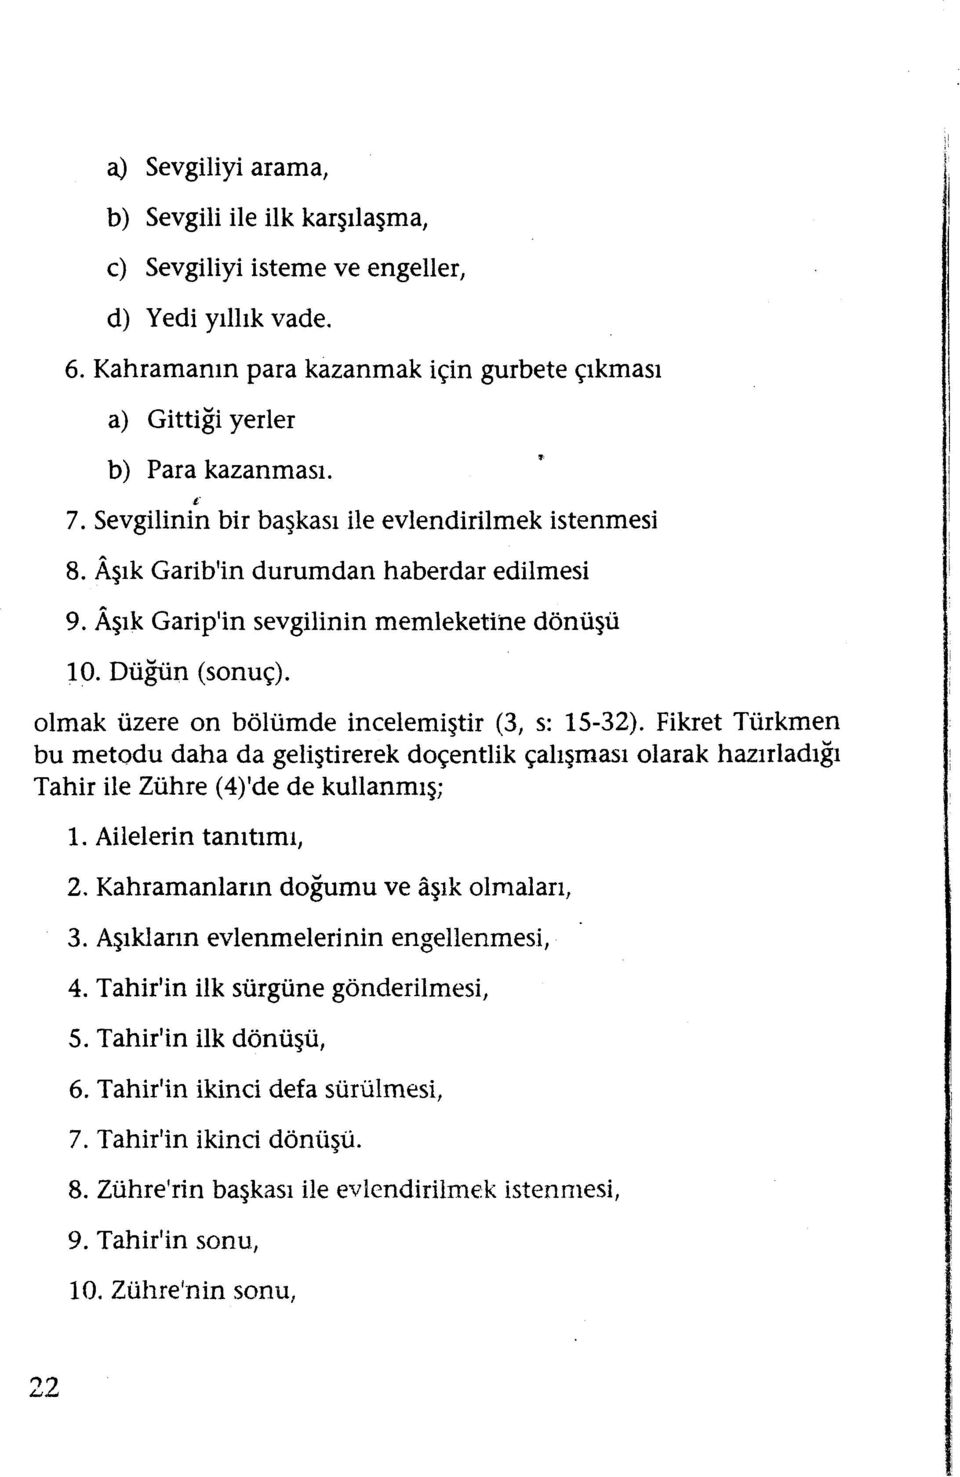 olmak üzere on bölümde incelemiştir (3, s: 15-32). Fikret Türkmen bu metodu daha da geliştirerekdoçentlik çalışması olarak hazırladığı Tahir ile Zühre (4)'de de kullanmış; 1. Ailelerin tanıtımı, 2.